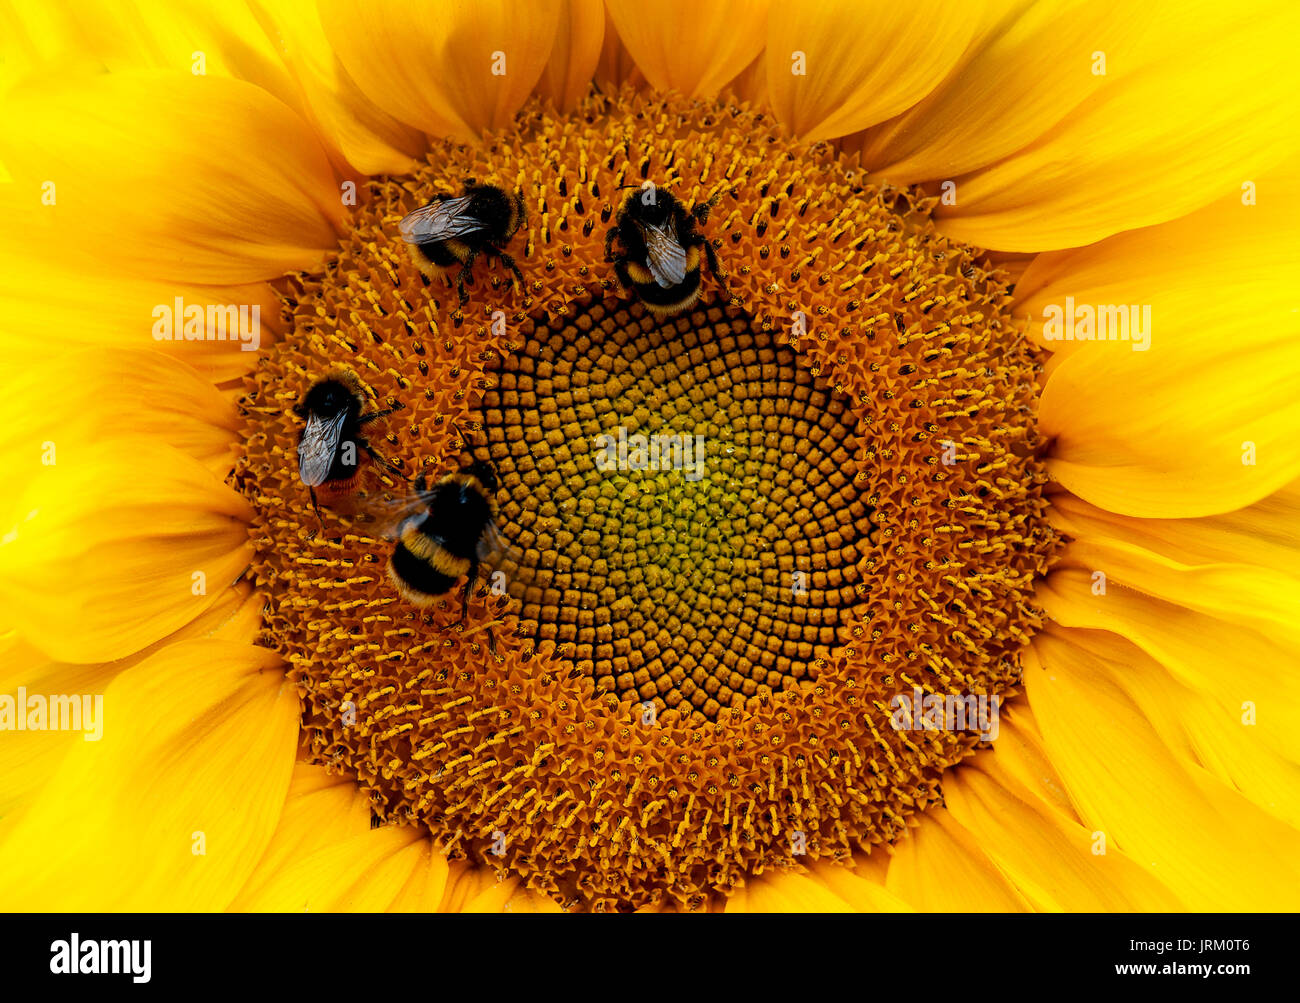 Die großen, leuchtend gelben Blüten von Sonnenblumen präsentieren eine Nektar und Pollen Fundgrube für ihre Bestäuber, die Bienen aller Art. Stockfoto